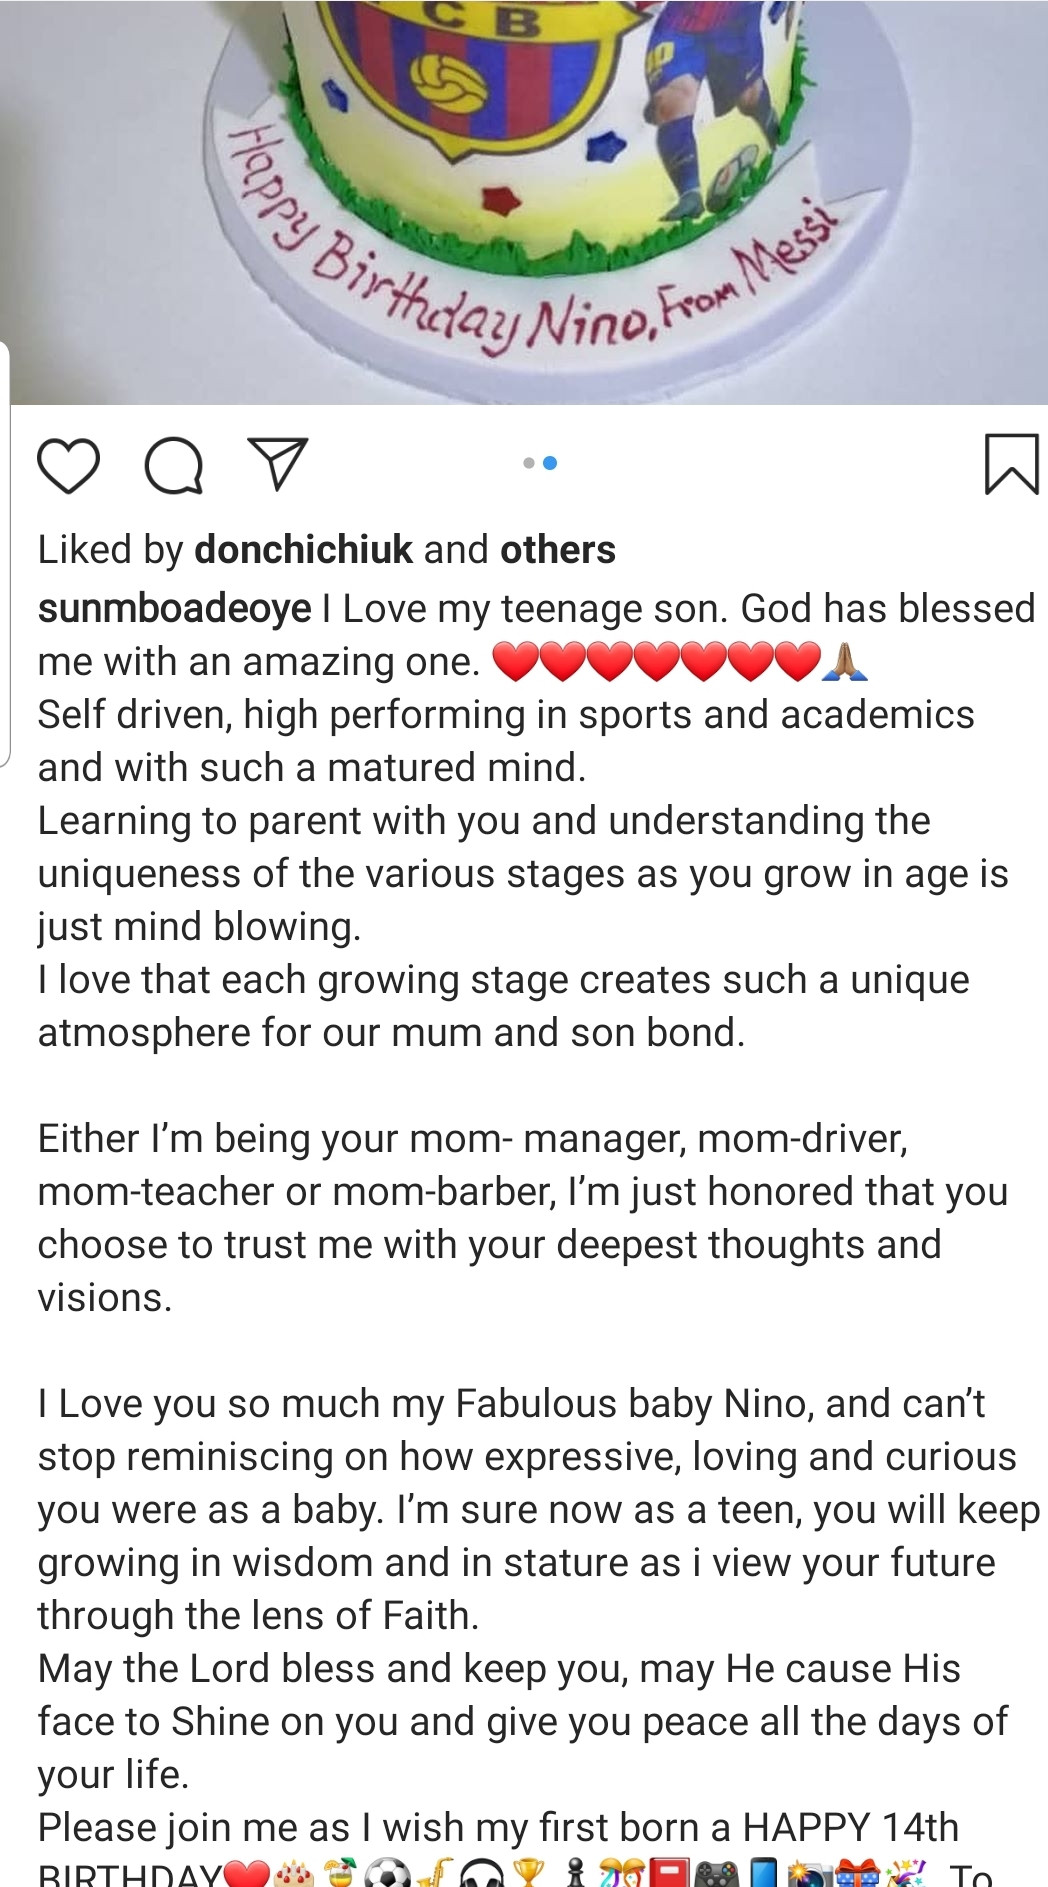 Sumbo Adeoye's post